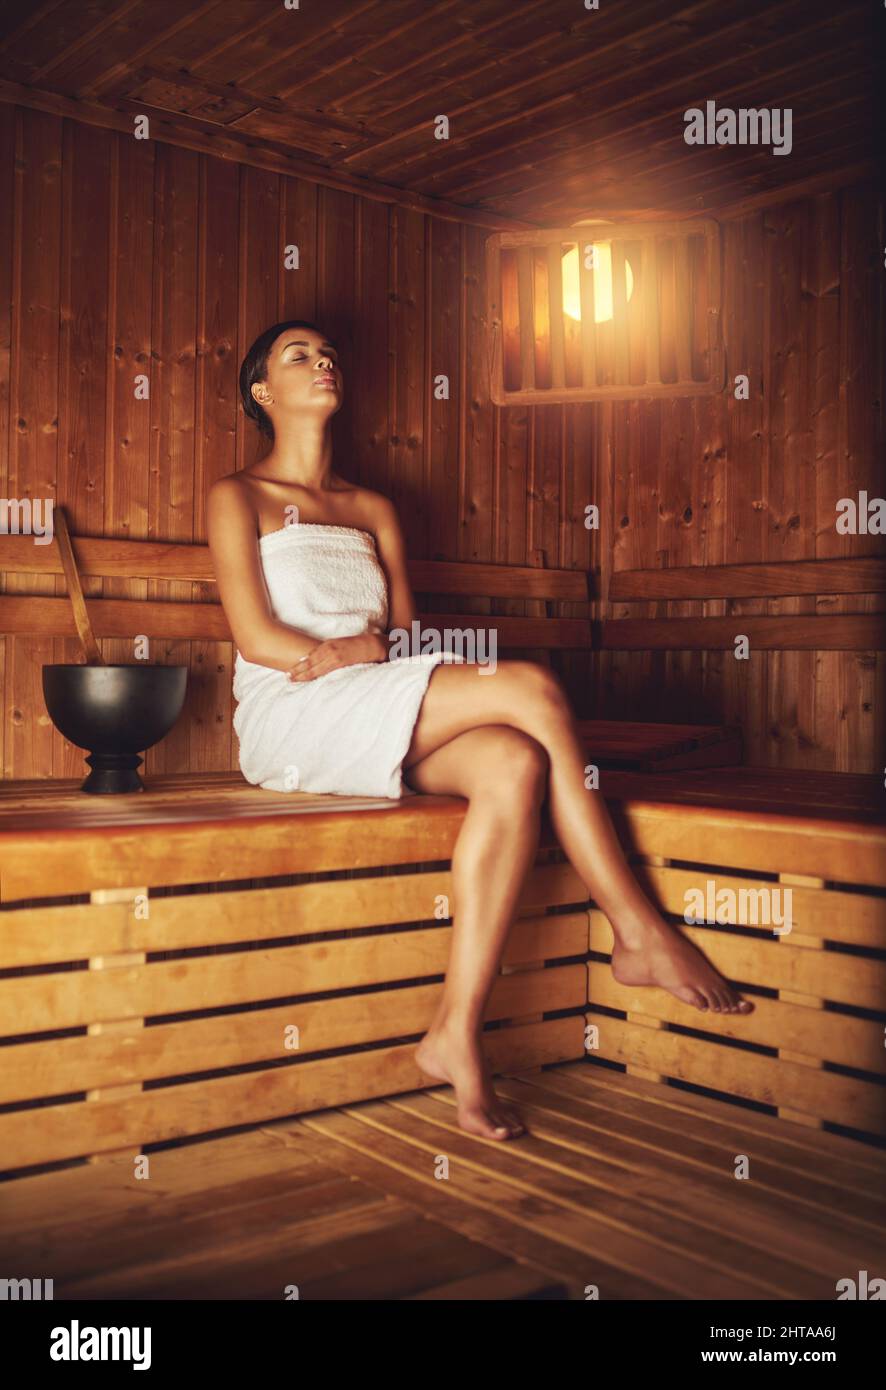 Woman in sauna natural sauna hi-res stock photography and images - Alamy